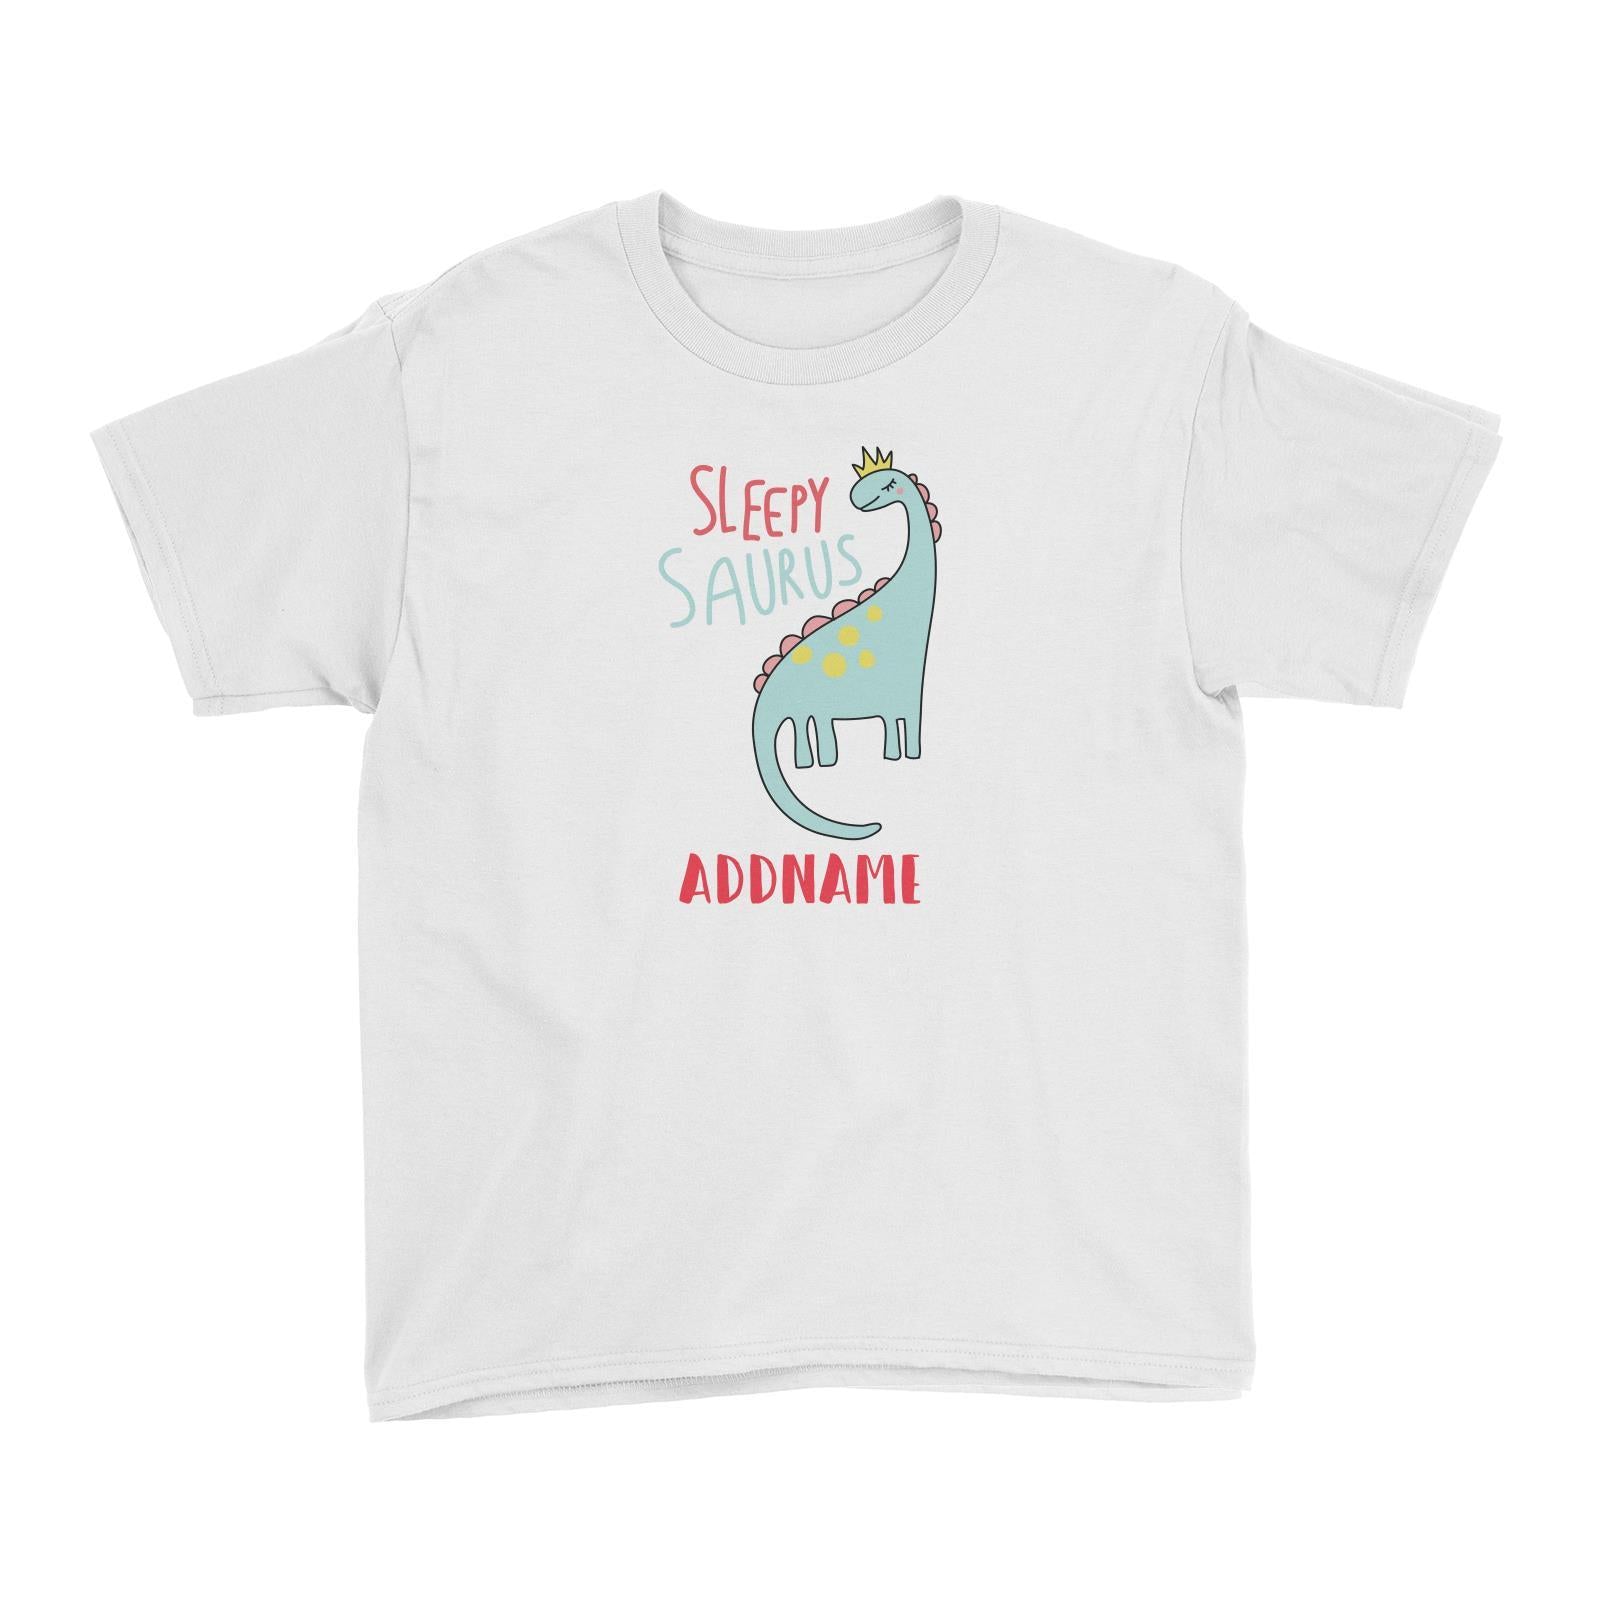 Cool Vibrant Series Sleepysaurus Addname Kid's T-Shirt